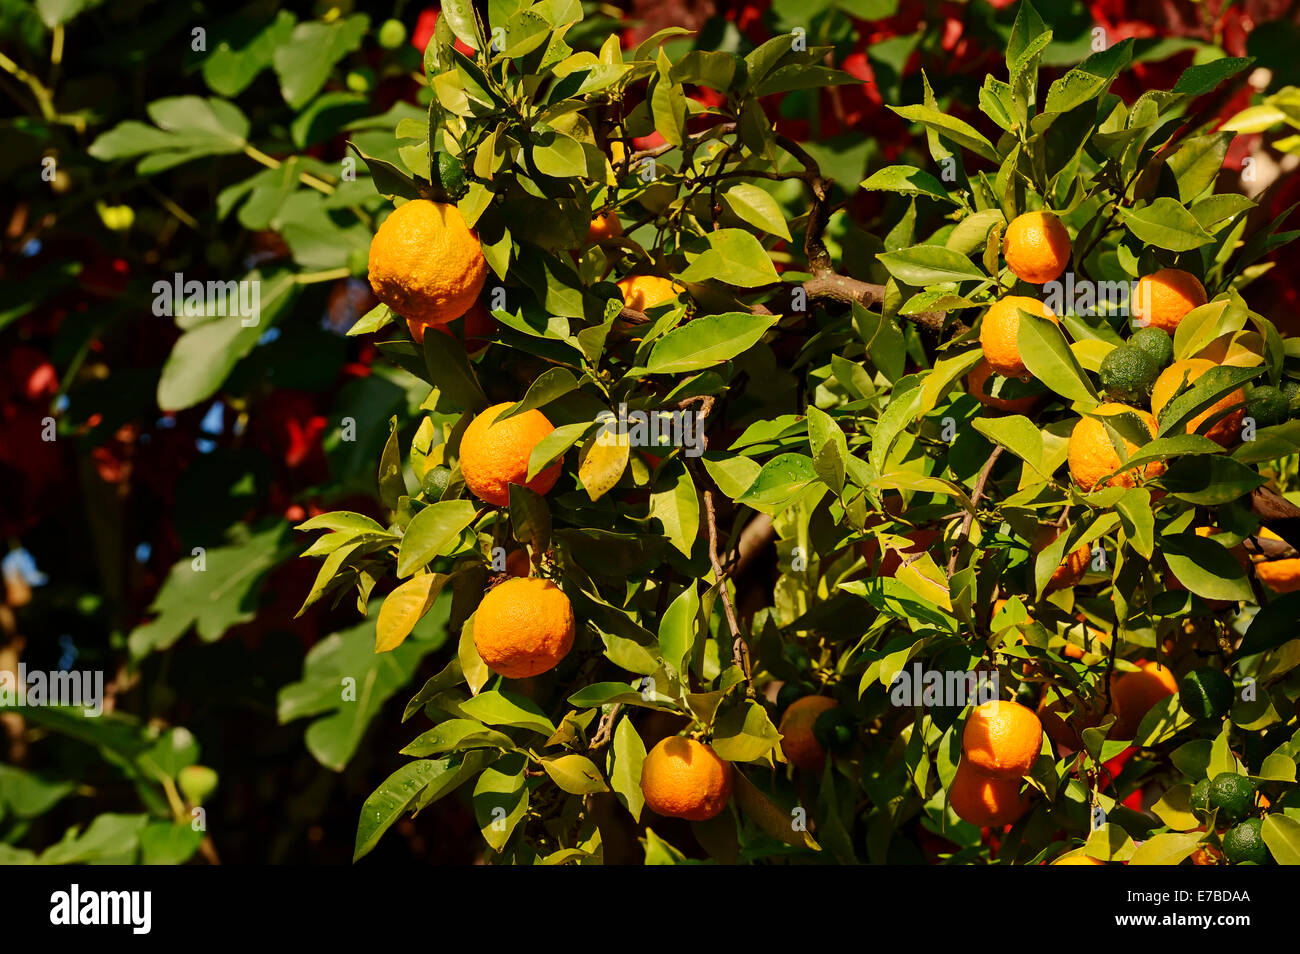 Ornamental Bitter Orange (Citrus aurantium ssp. aurantium), oranges hanging on the tree, Germany Stock Photo